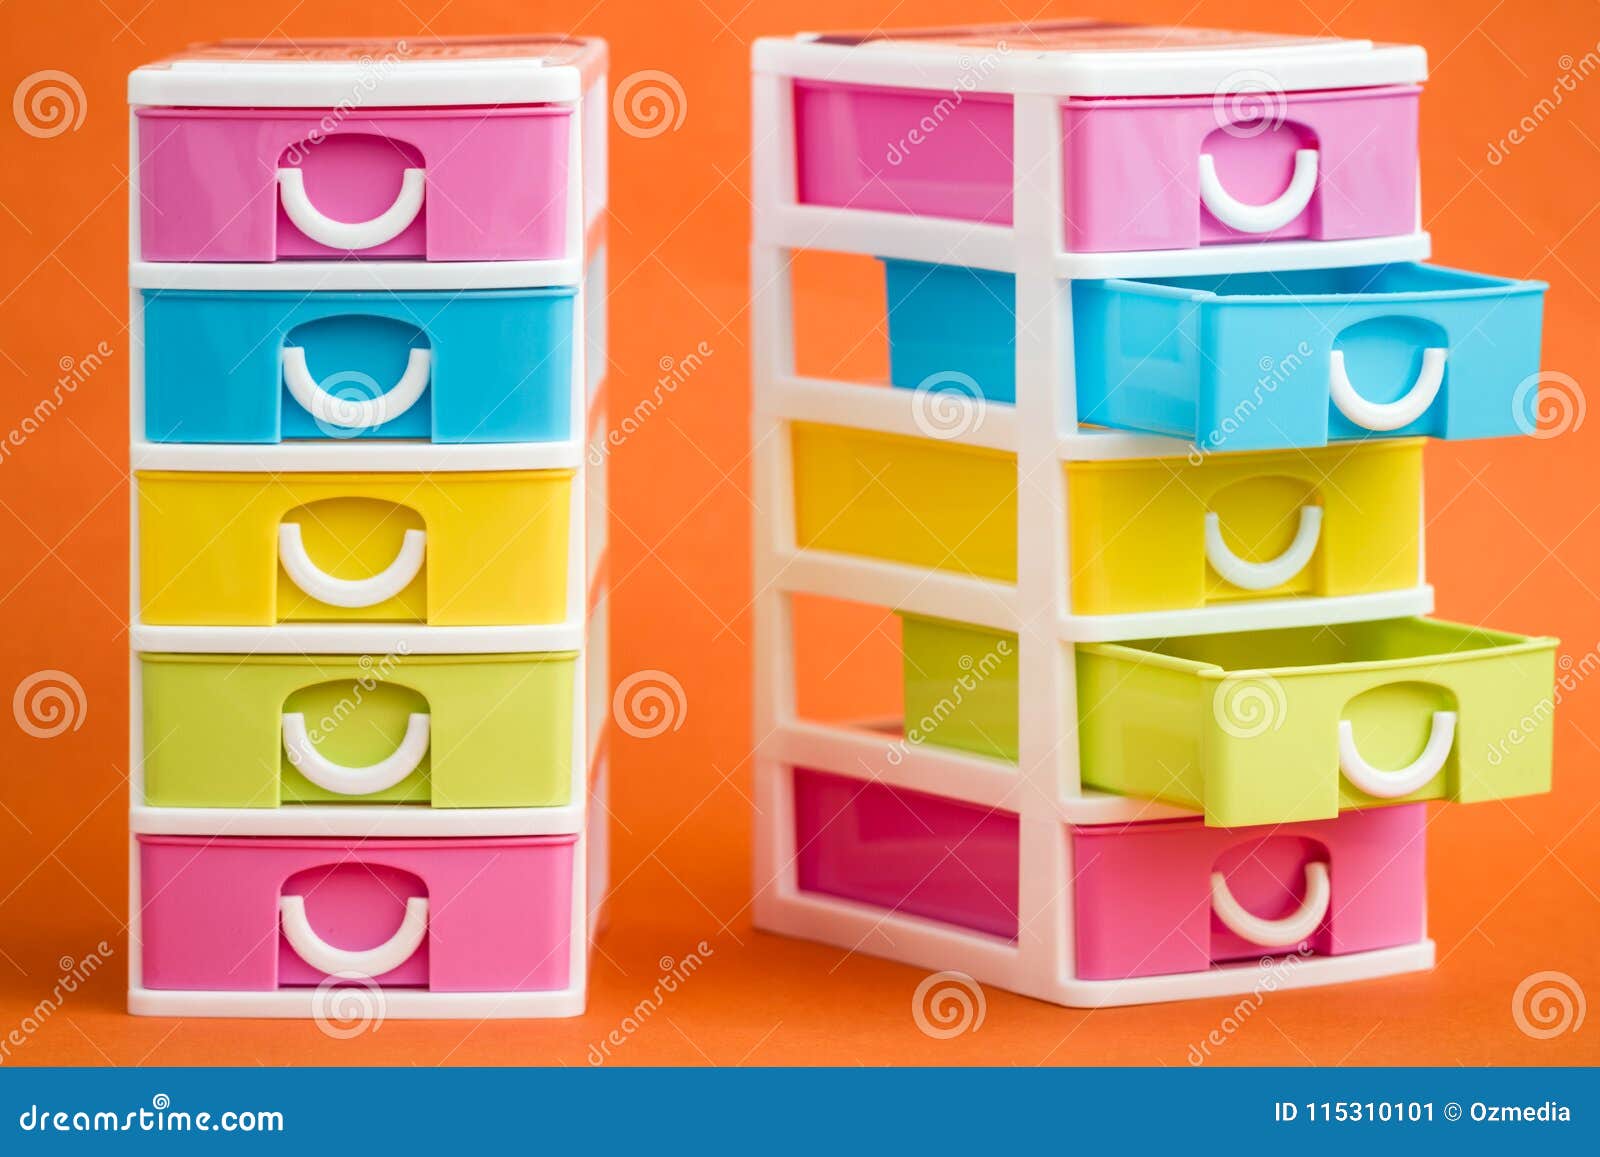 Cajones Plásticos Pequeños, Lindos Coloridos En Naranja Imagen de archivo - Imagen de caso, hardware: 115310101